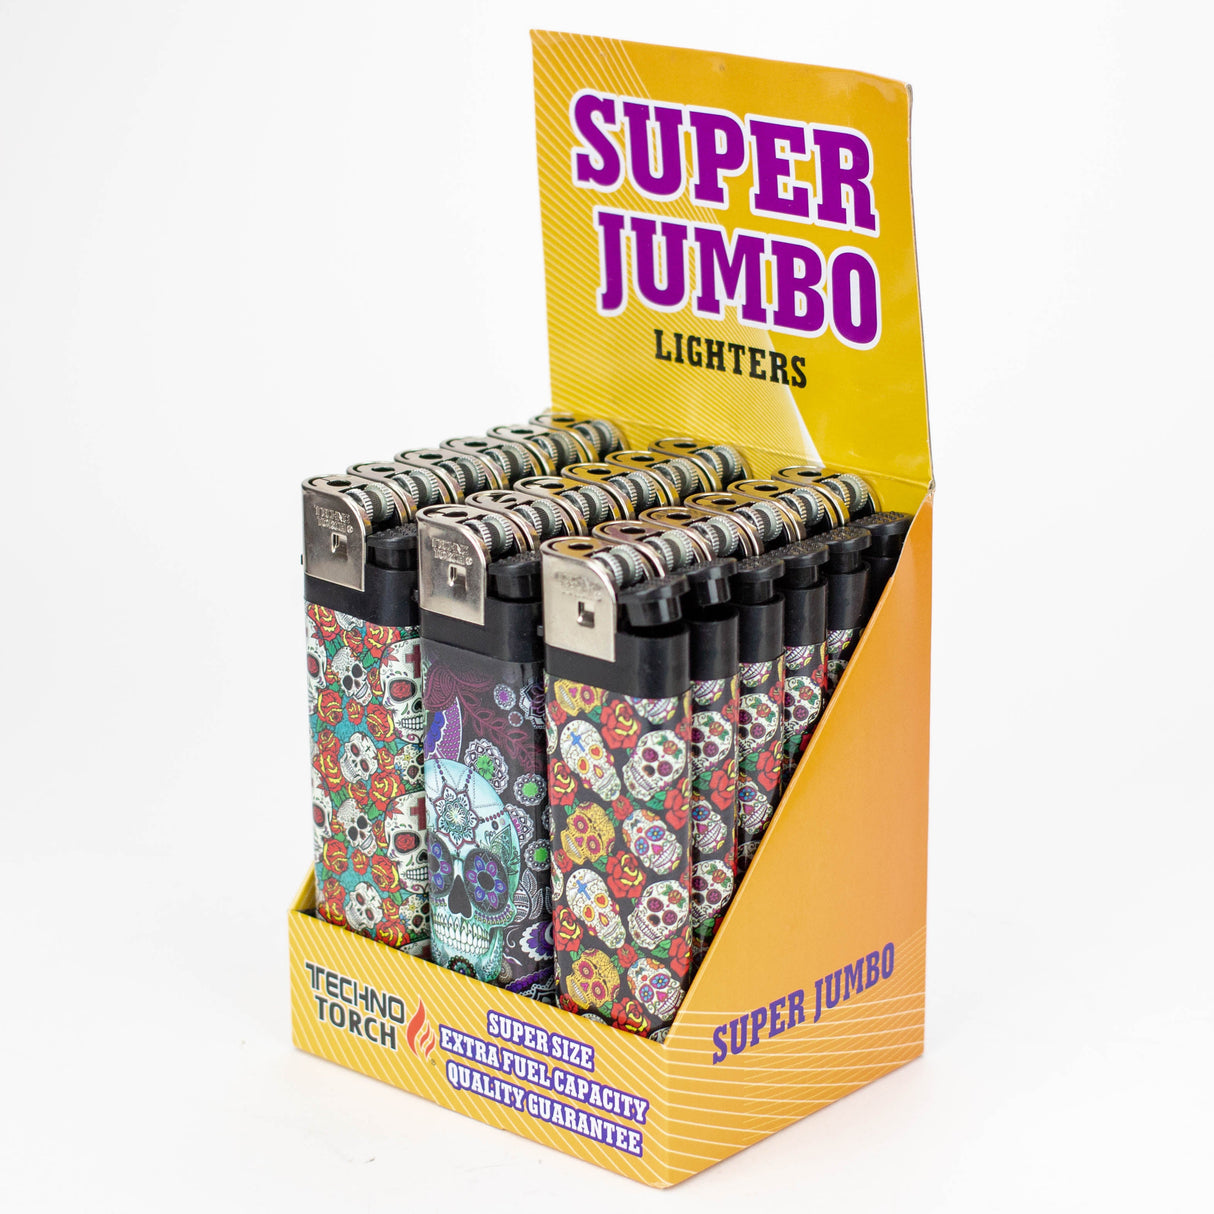 Techno - 6" Super Jumbo ligher Box of 18 [10921]